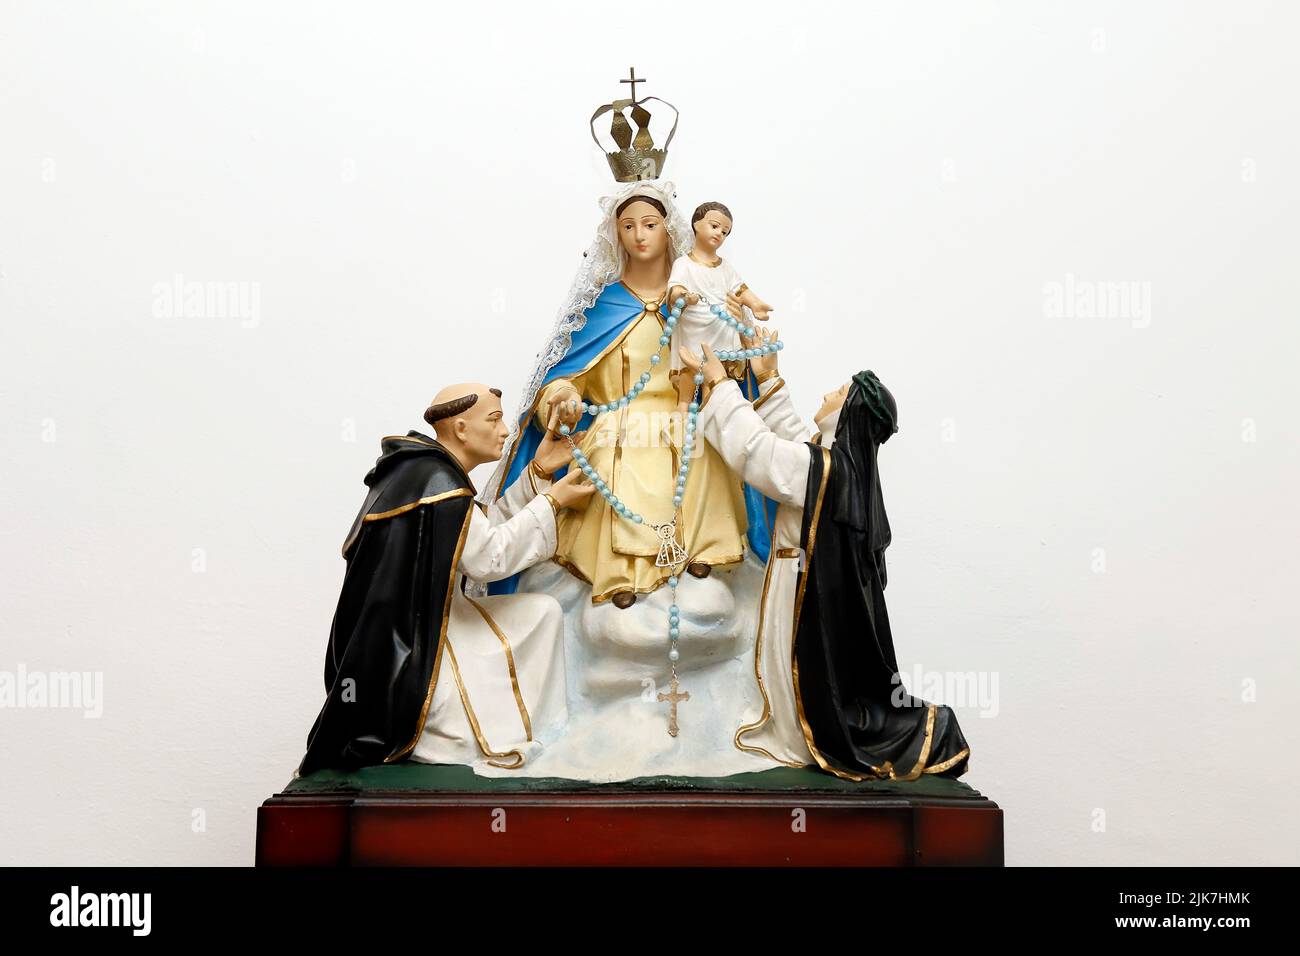 Estatua de la imagen de Nuestra Señora del Rosario Pompeya con el niño Jesús, Santo Domingo de Gusmao y Santa Catalina del Sena - Nossa Senhora do Rosario de Foto de stock